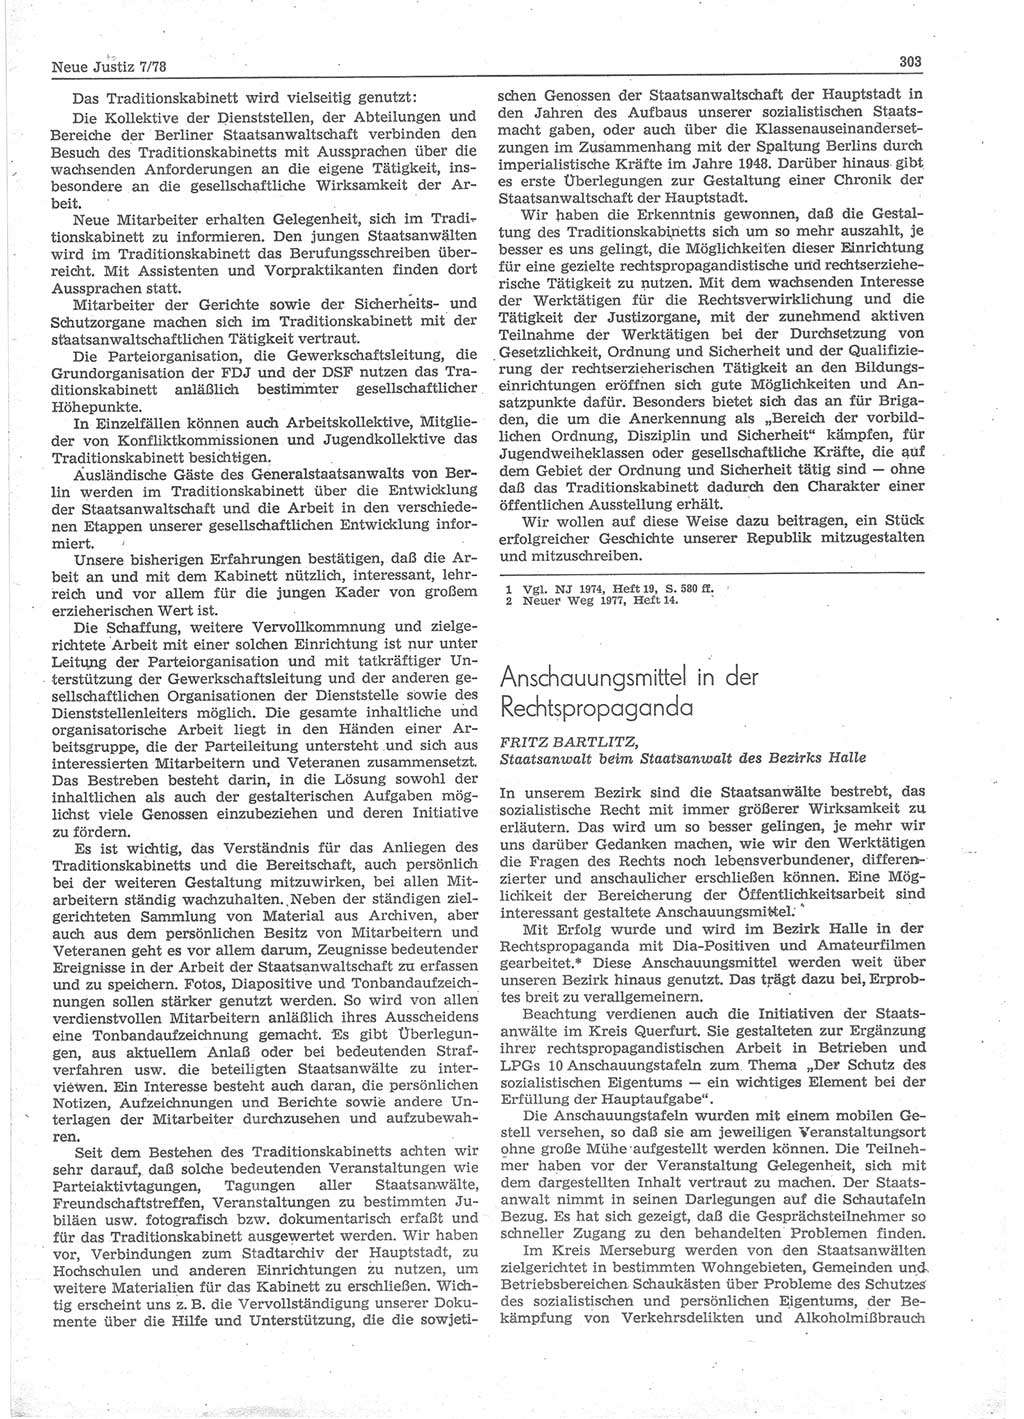 Neue Justiz (NJ), Zeitschrift für sozialistisches Recht und Gesetzlichkeit [Deutsche Demokratische Republik (DDR)], 32. Jahrgang 1978, Seite 303 (NJ DDR 1978, S. 303)